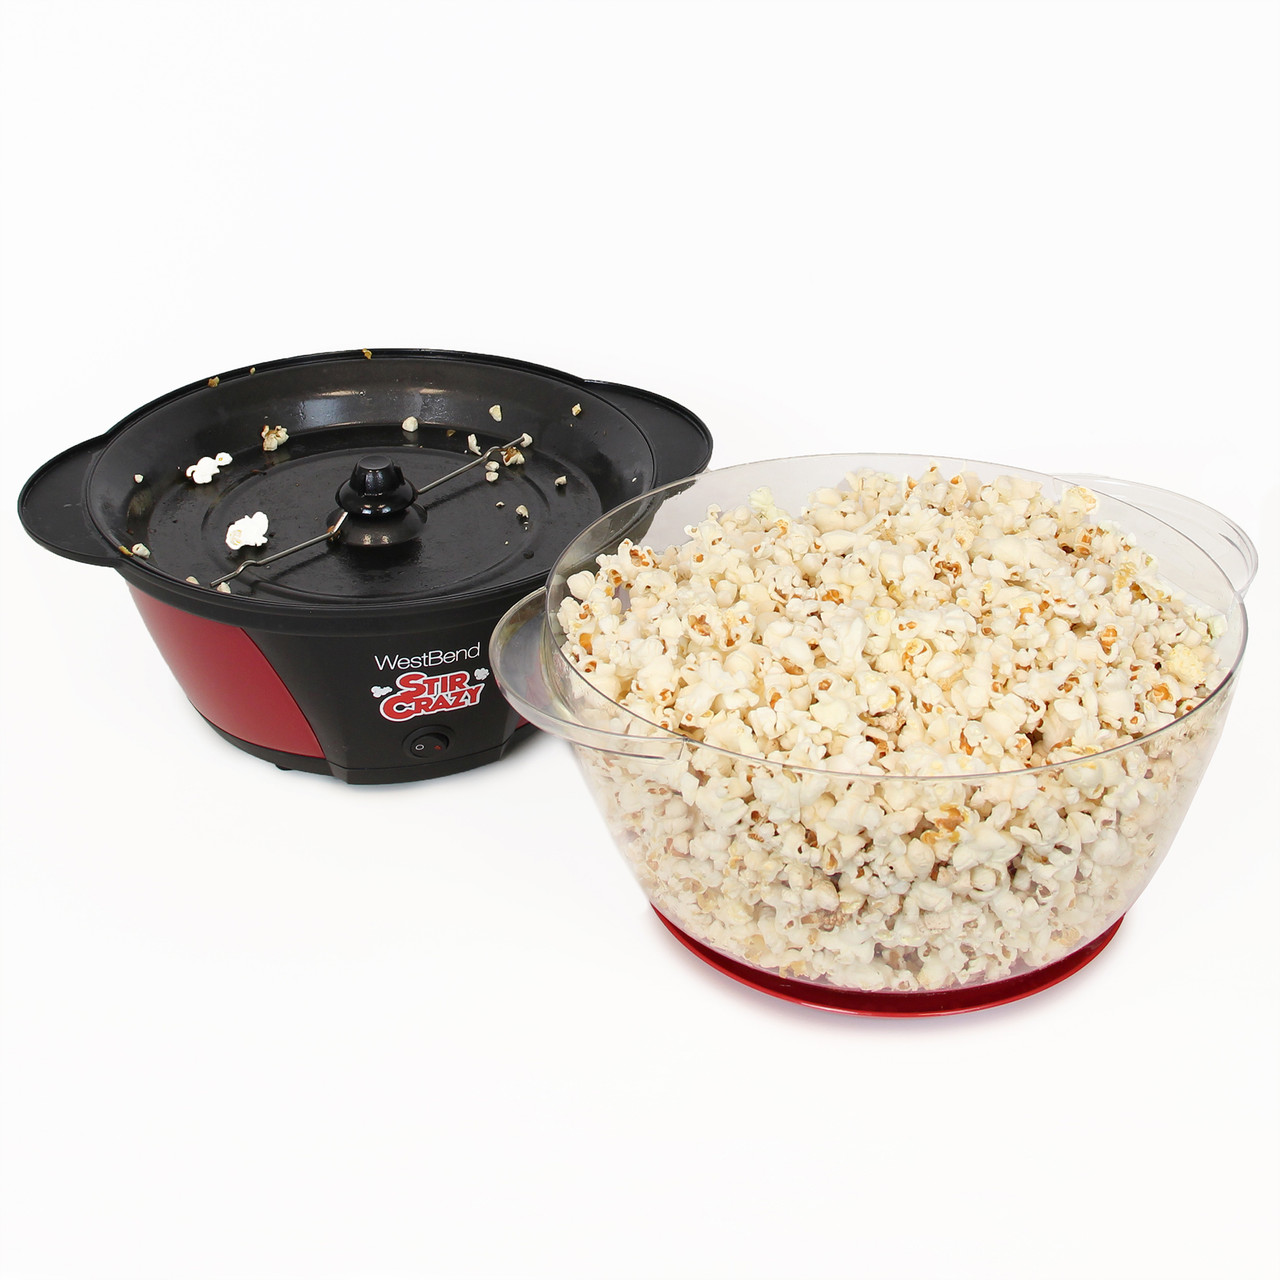 Stir Crazy Popcorn Machine, Red, 6qt